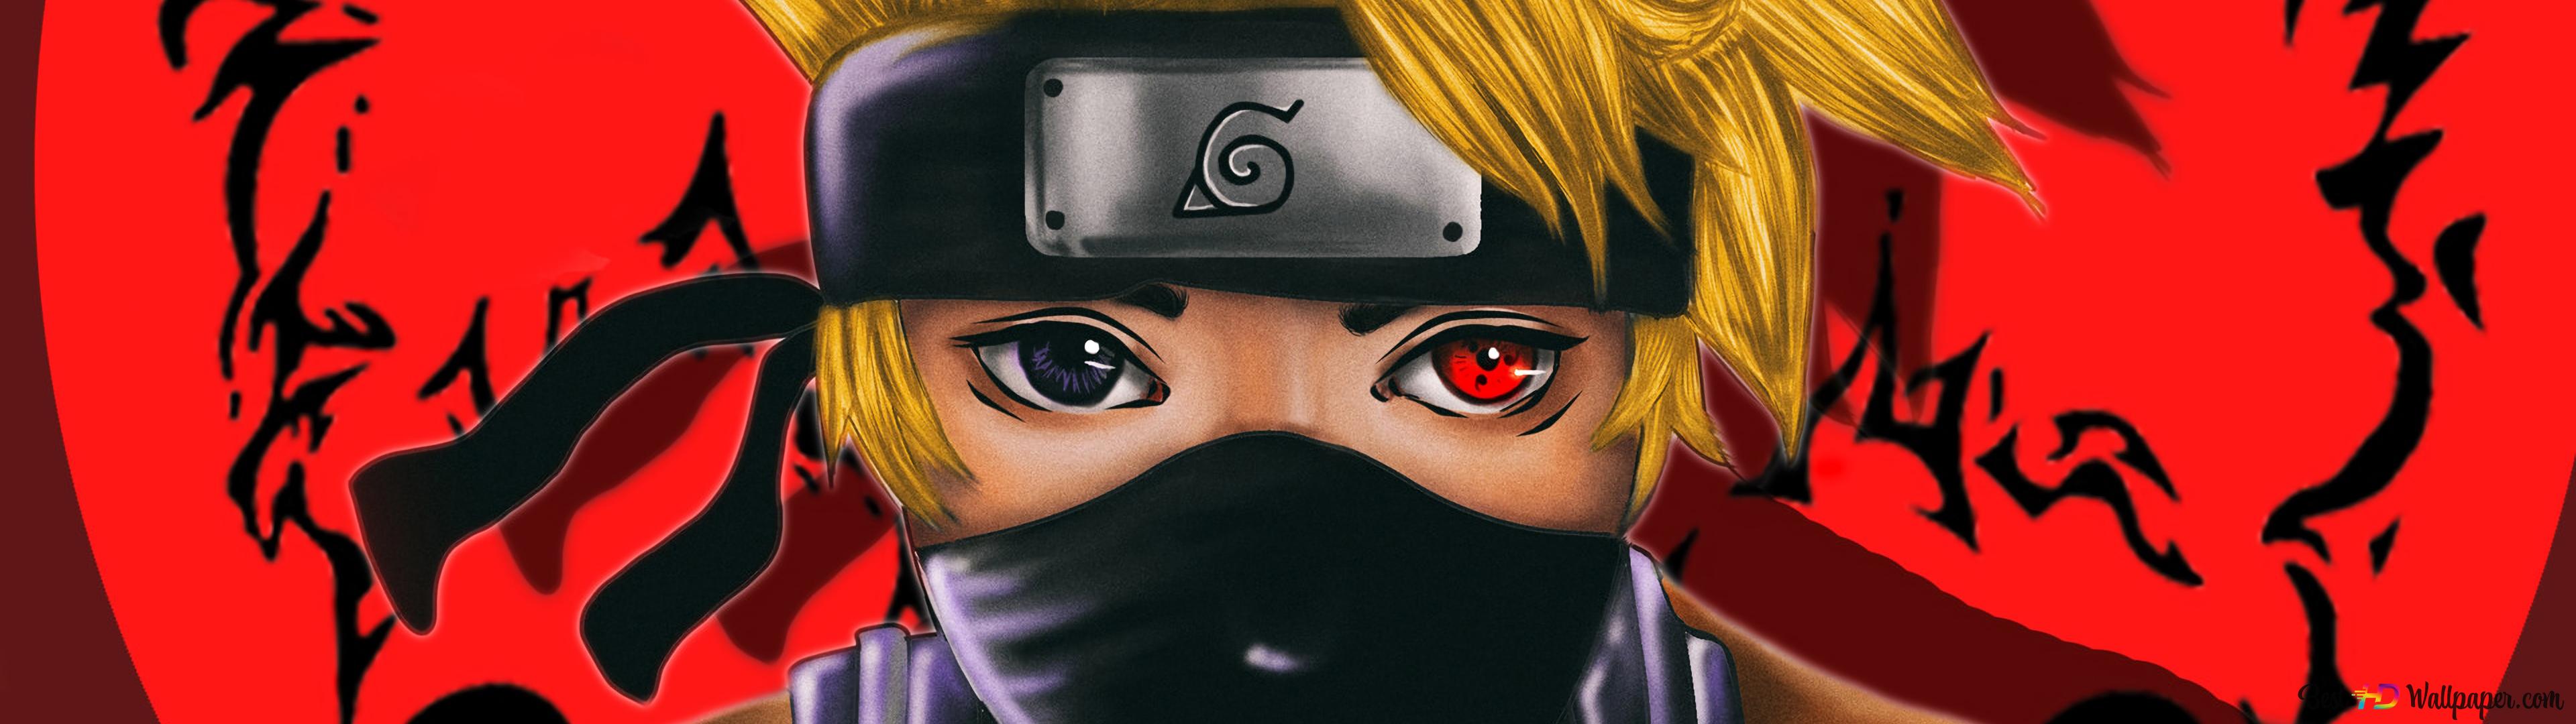 Naruto with an sharingan eye k wallpaper download